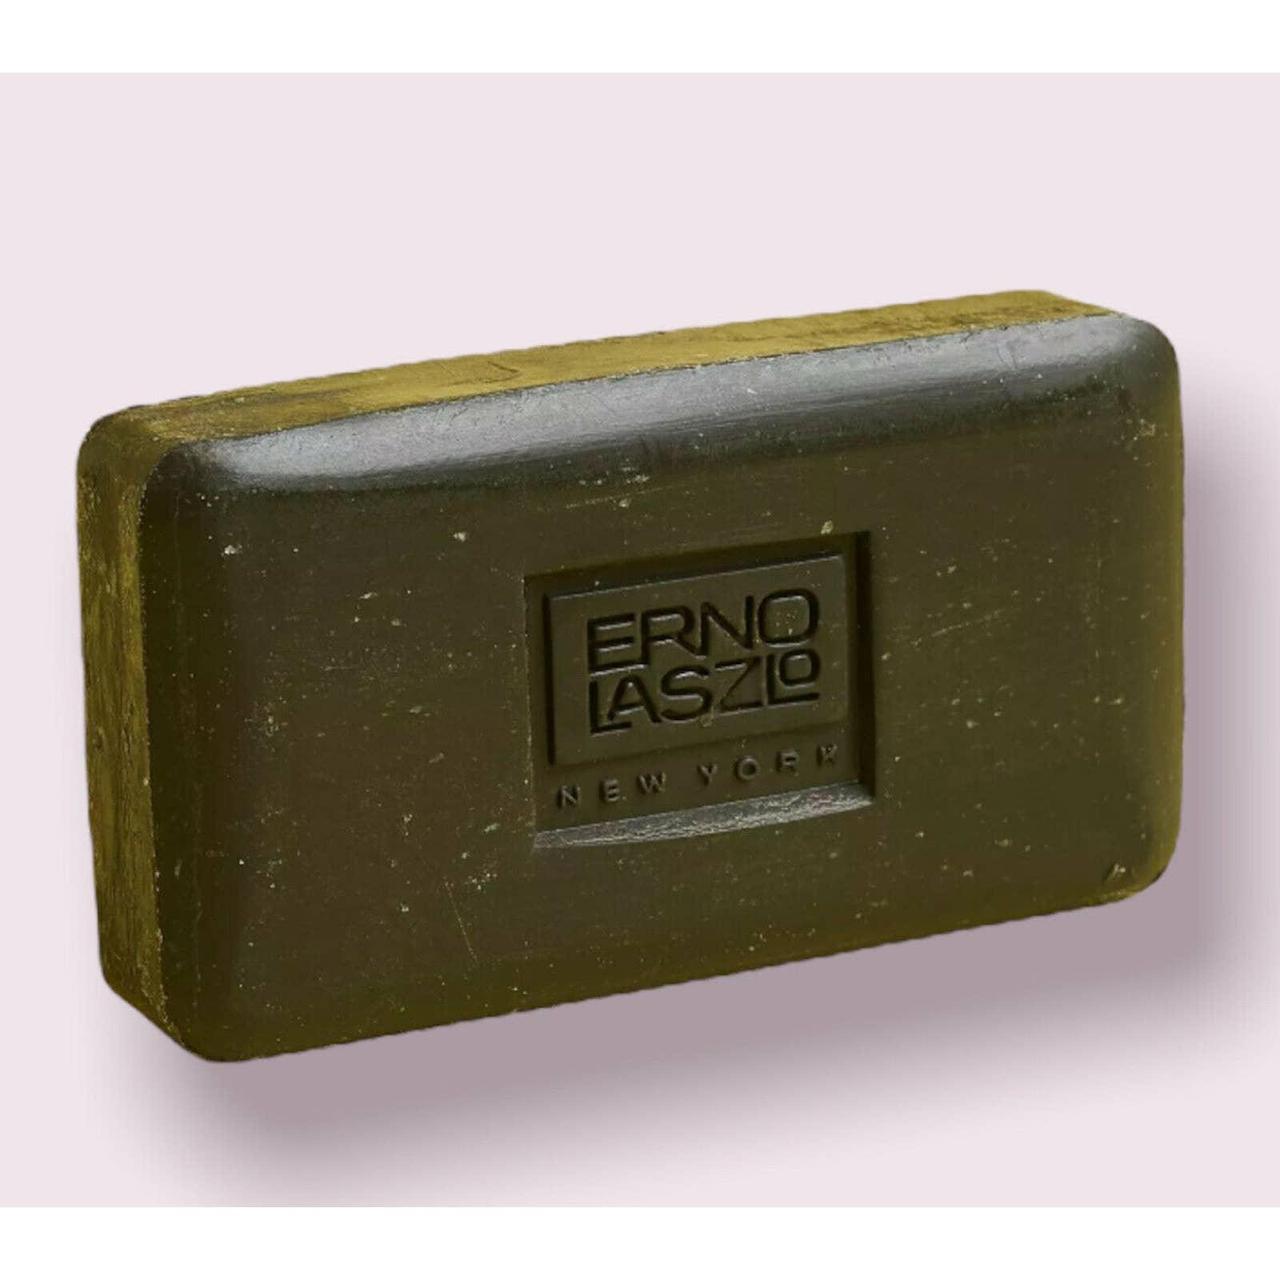 Product Image 2 - Erno Laszlo Famous Black Soap